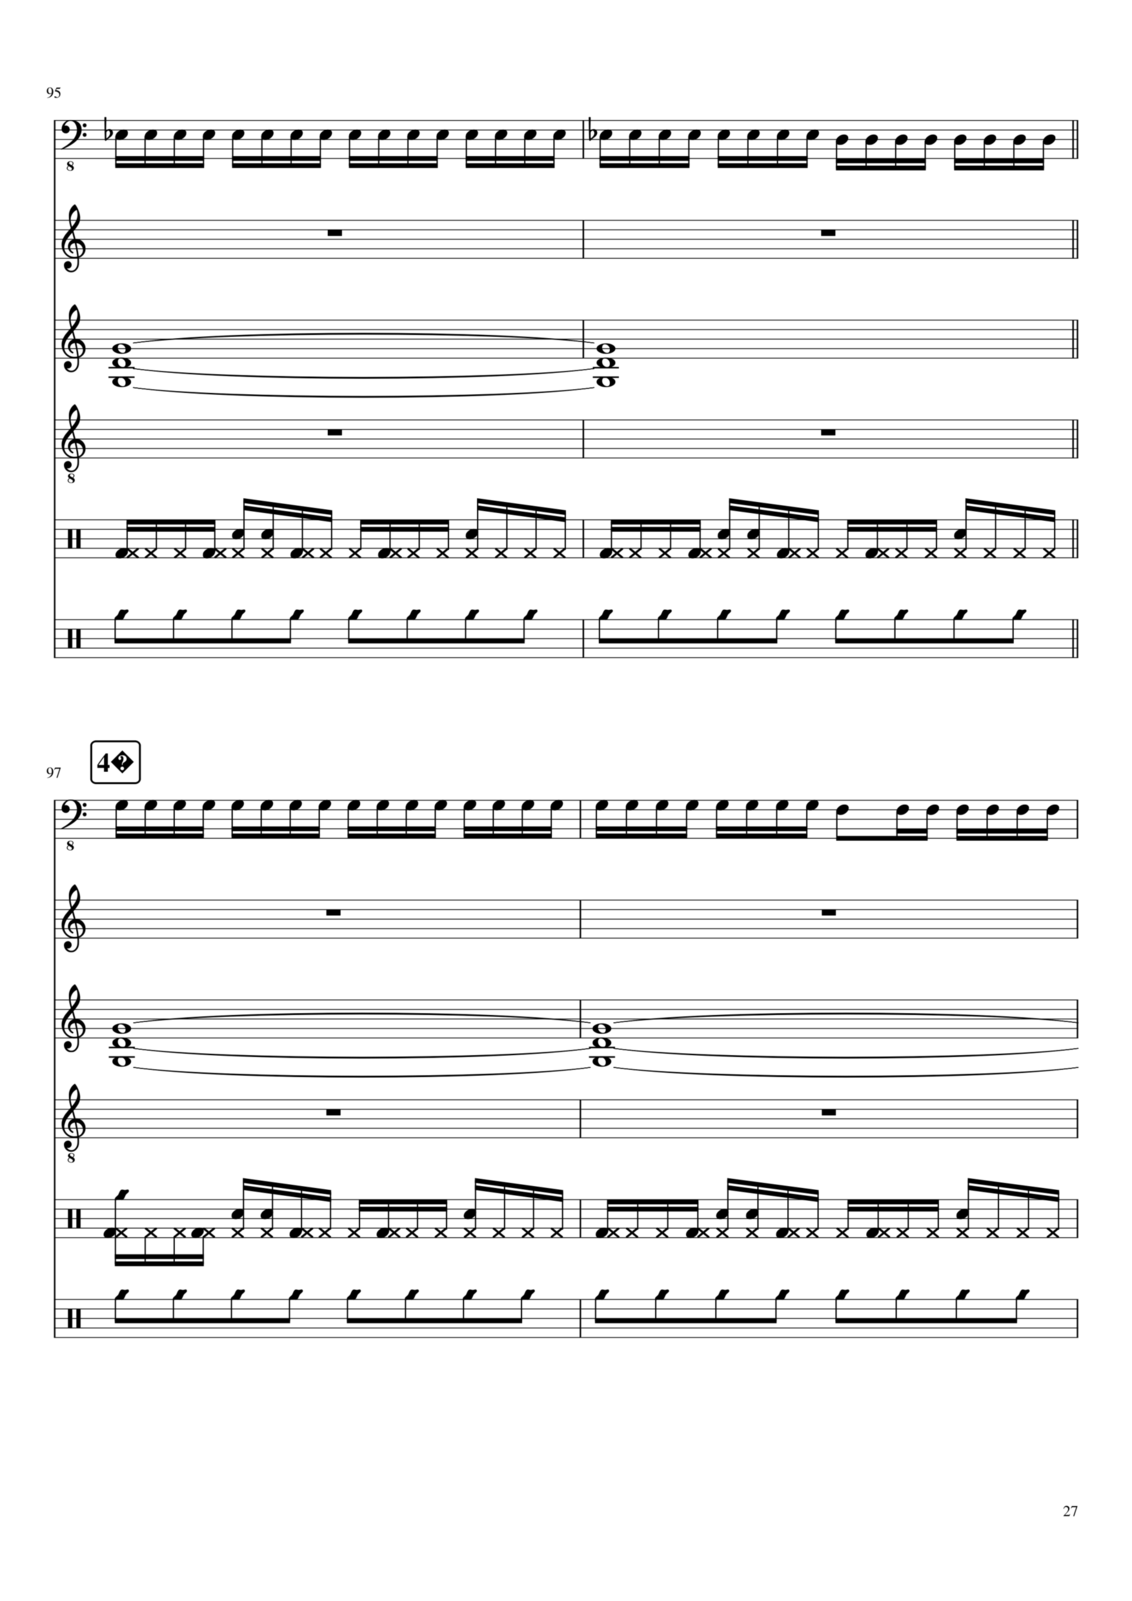 Utro polinyi slide, Image 83